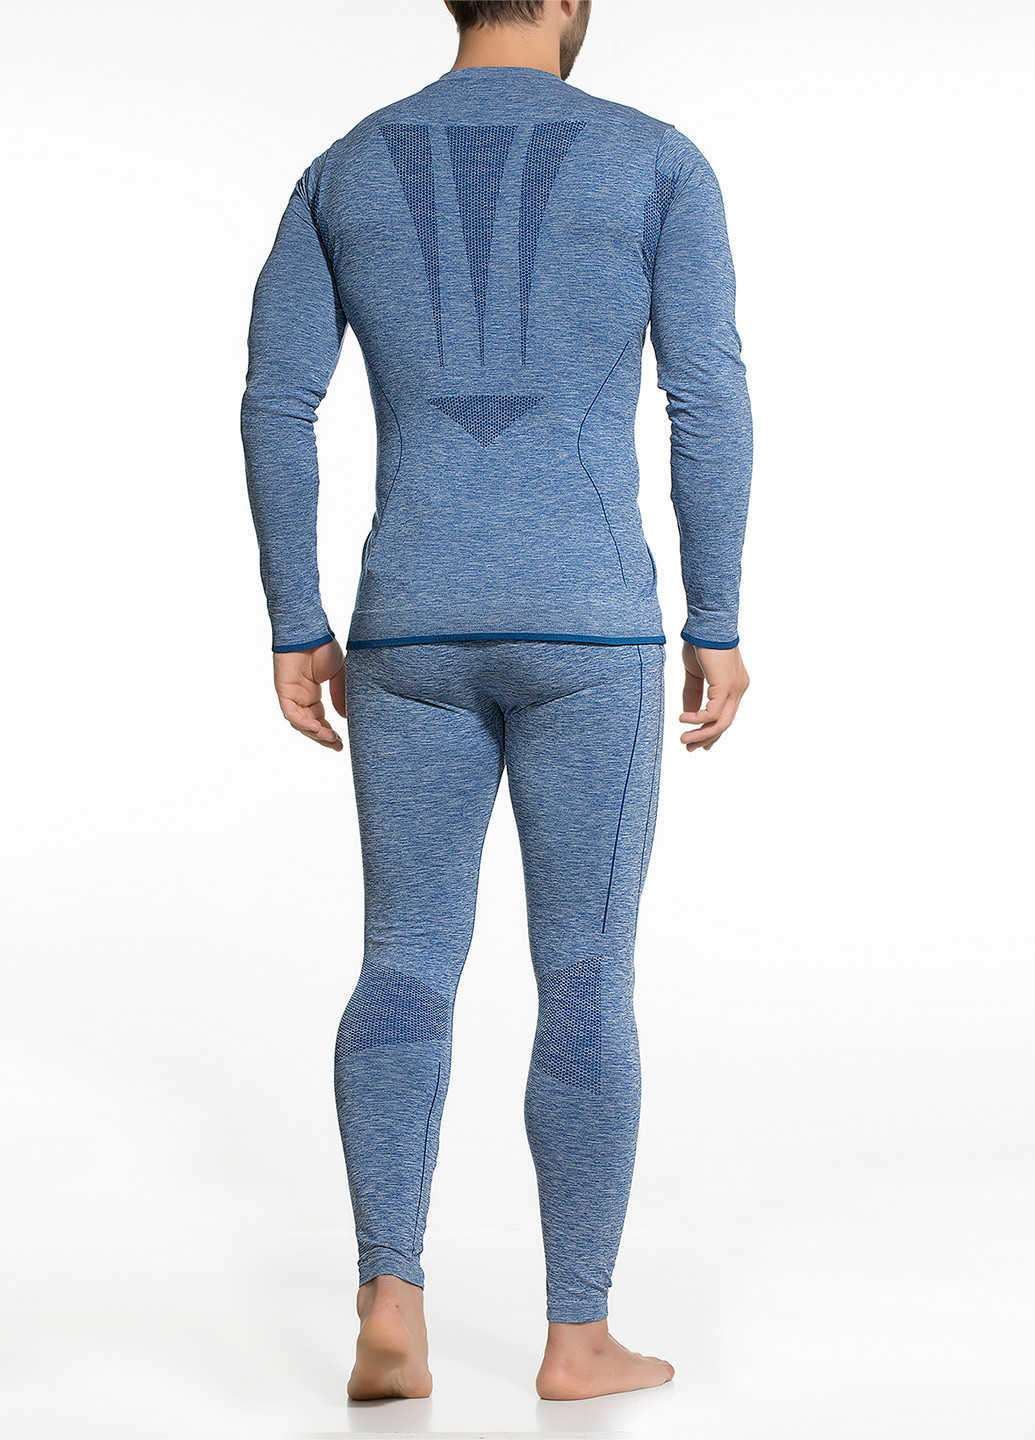 Термокостюм (лонгслив, кальсоны) DoReMi меланж синий спортивный полиамид